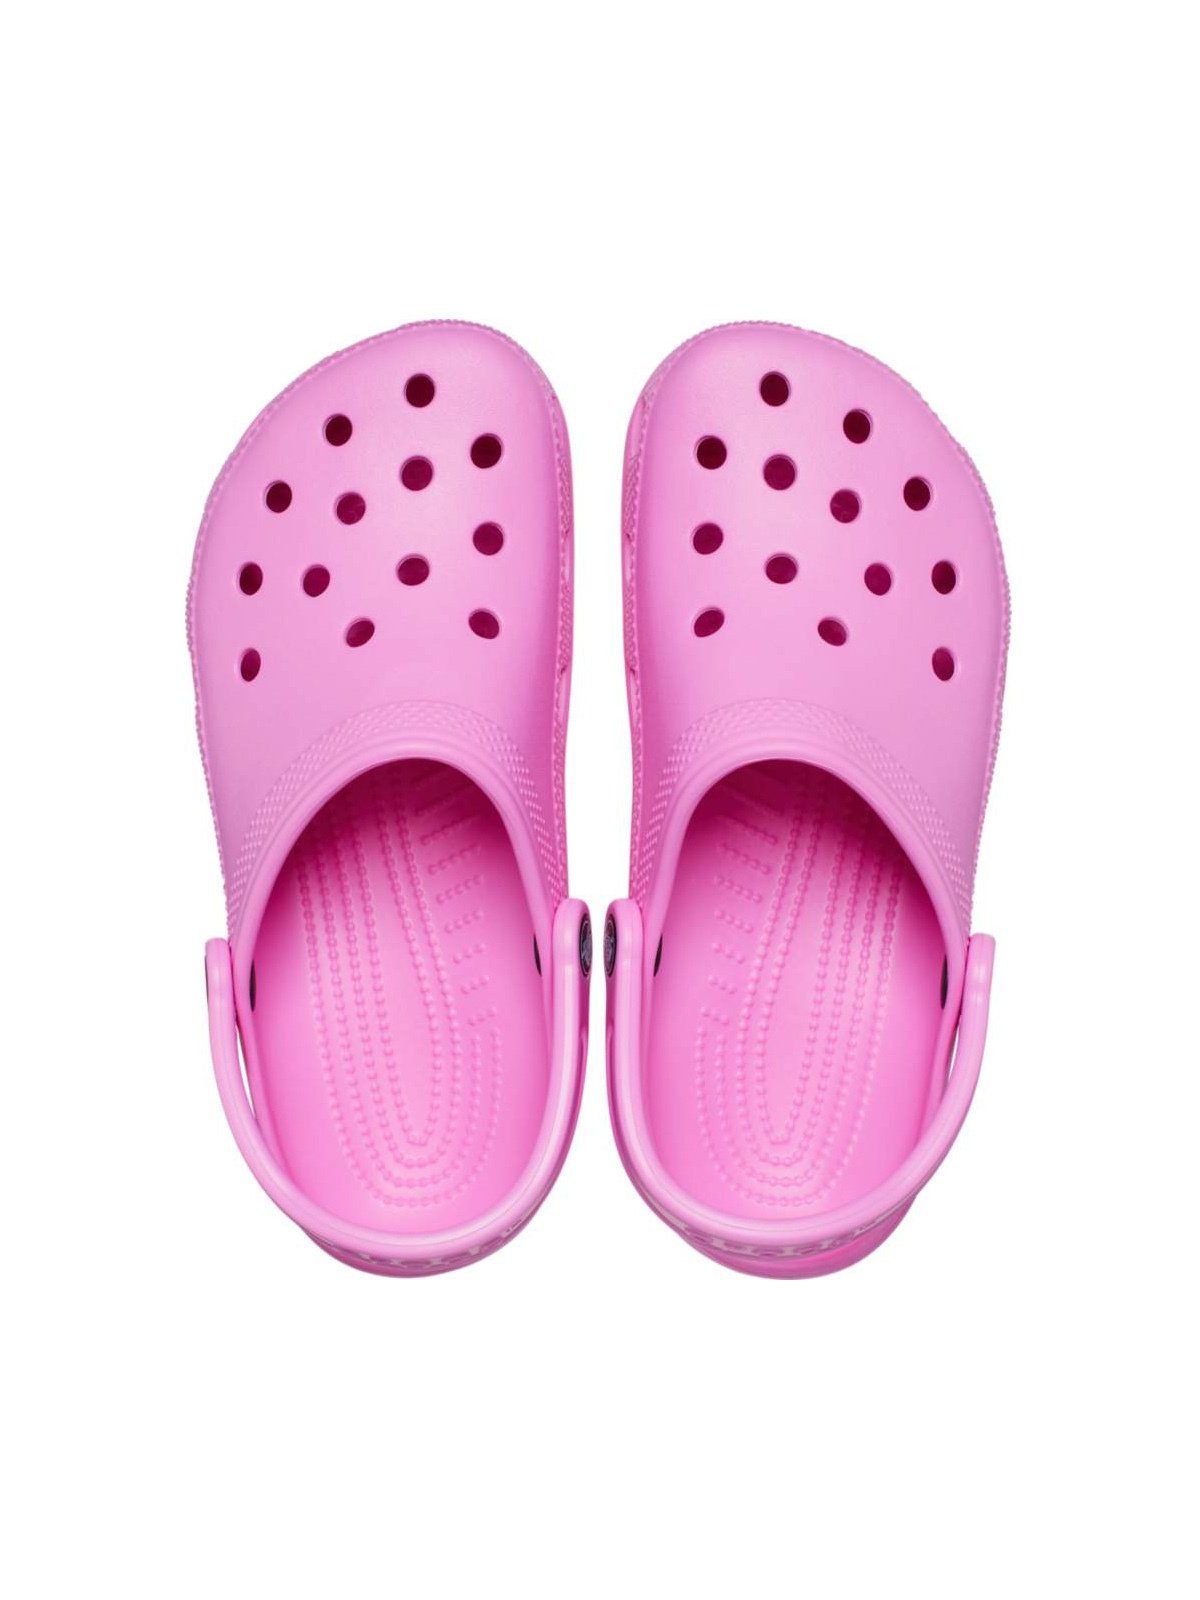 Crocs Crocs Clog Clog Classic pink taffy